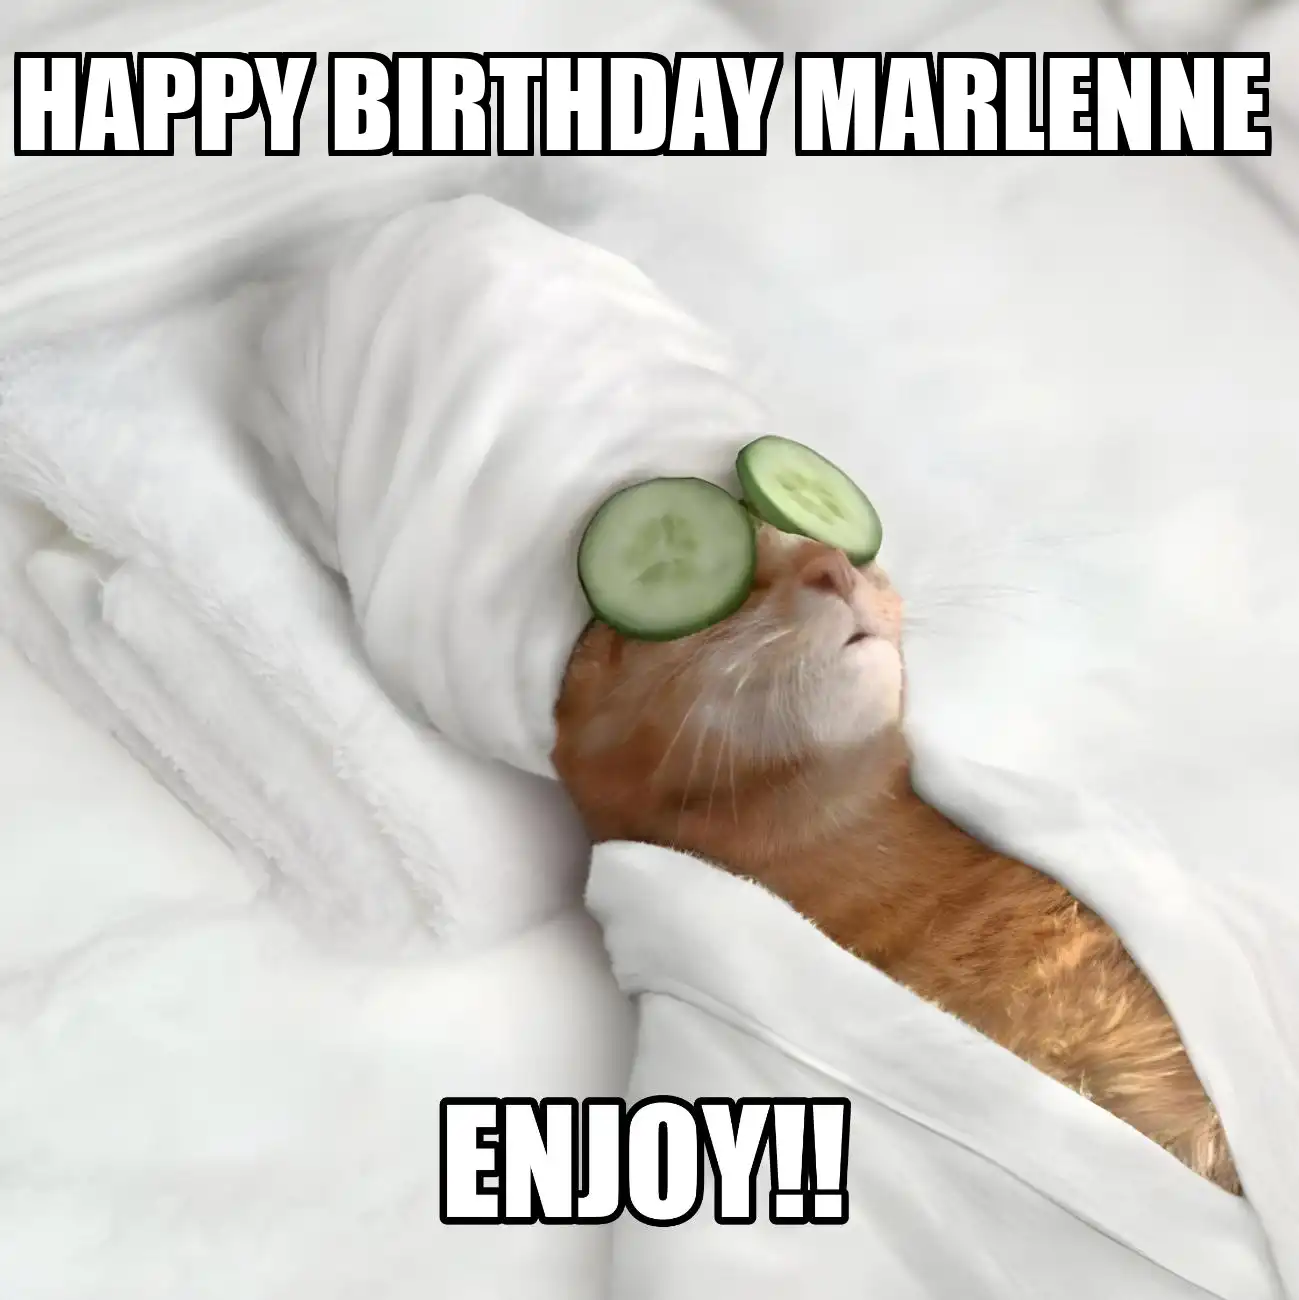 Happy Birthday Marlenne Enjoy Cat Meme